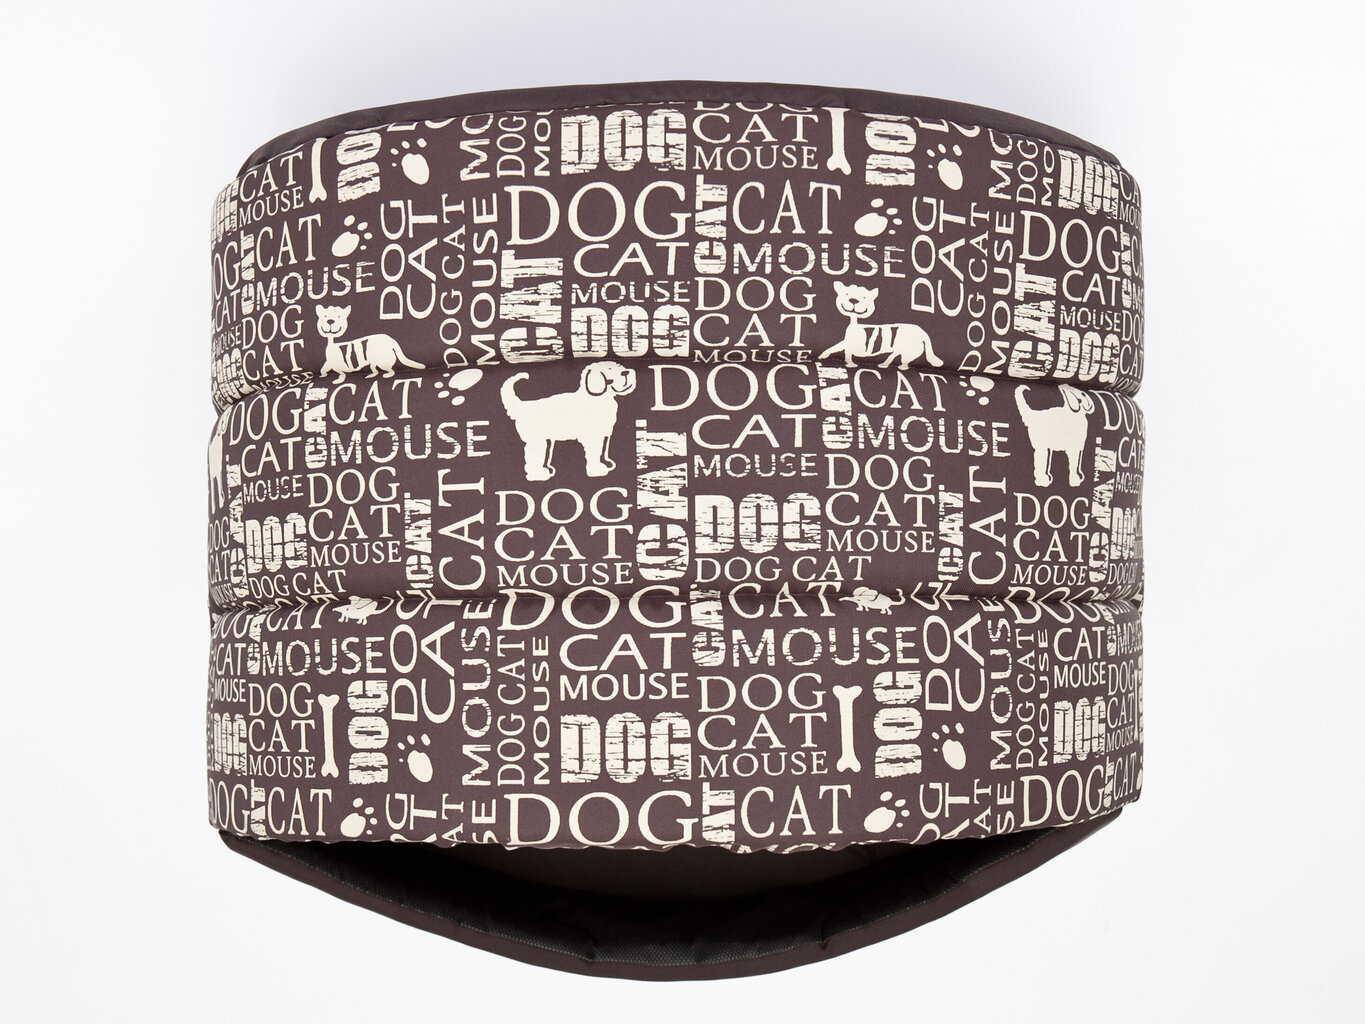 Guolis-būda Hobbydog R4, 60x49x42cm, rudas su užrašais kaina ir informacija | Guoliai, pagalvėlės | pigu.lt